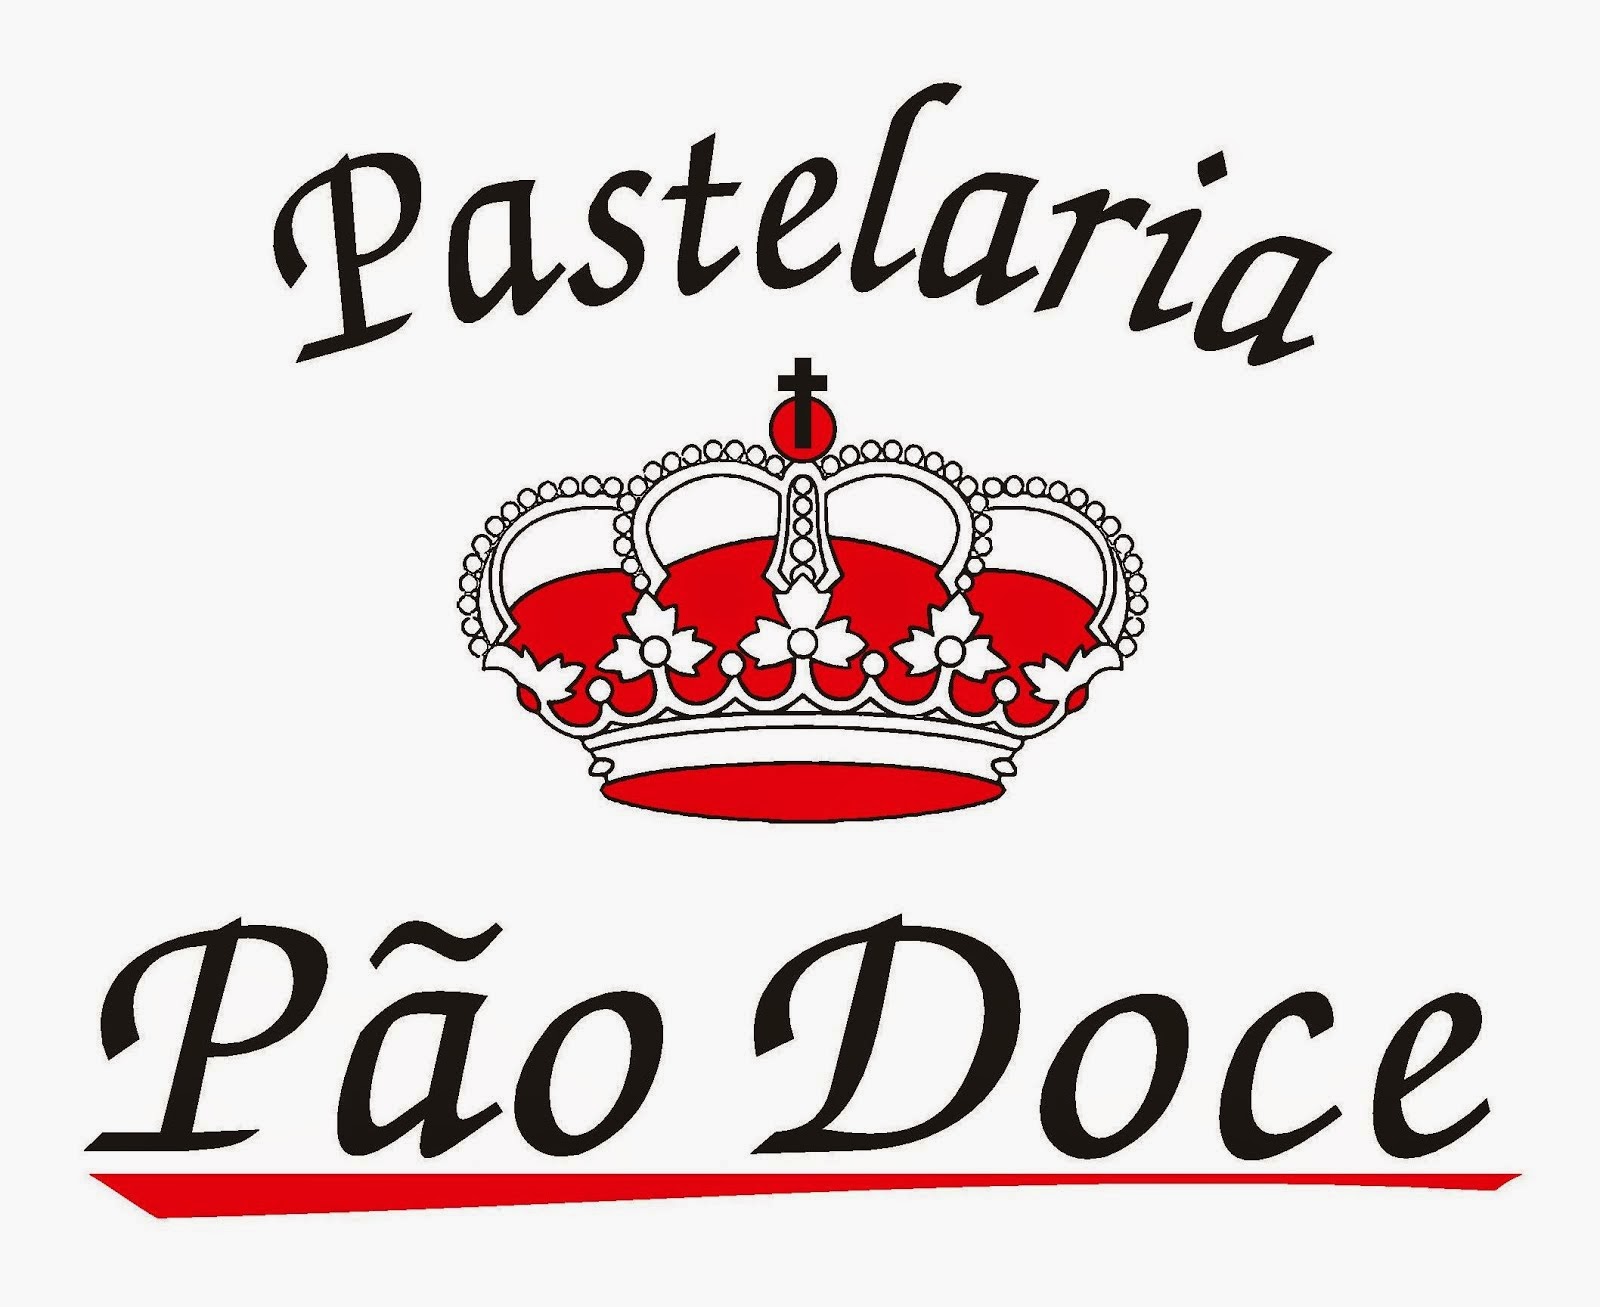 PASTELARIA PÃO DOCE